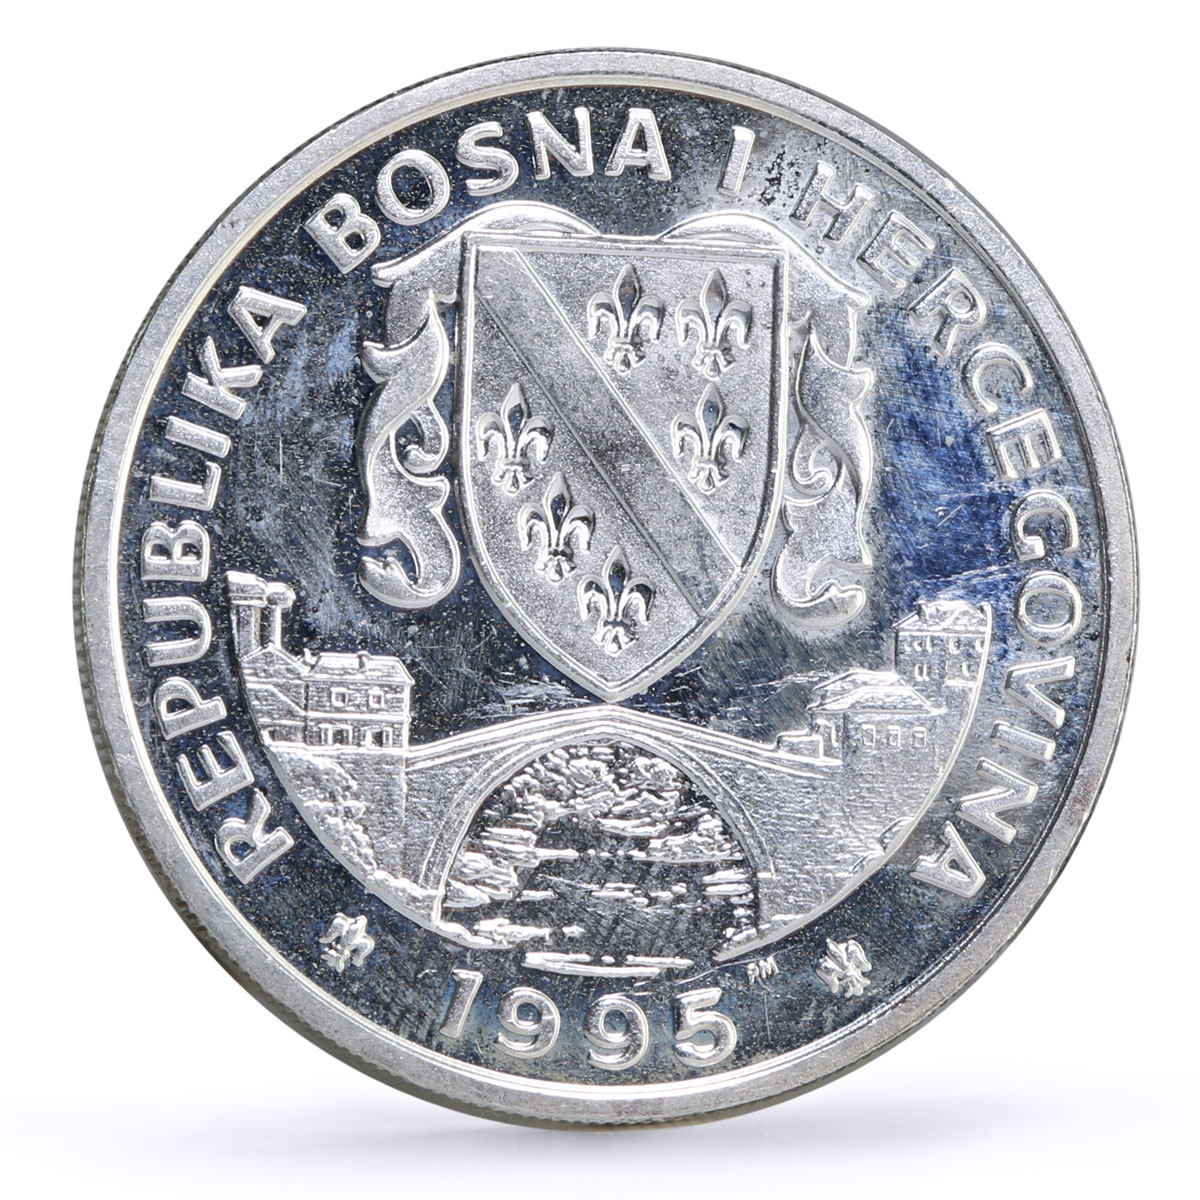 Bosnia and Herzegovina 14 ecus UN Peace Series Walking Europa silver coin 1995